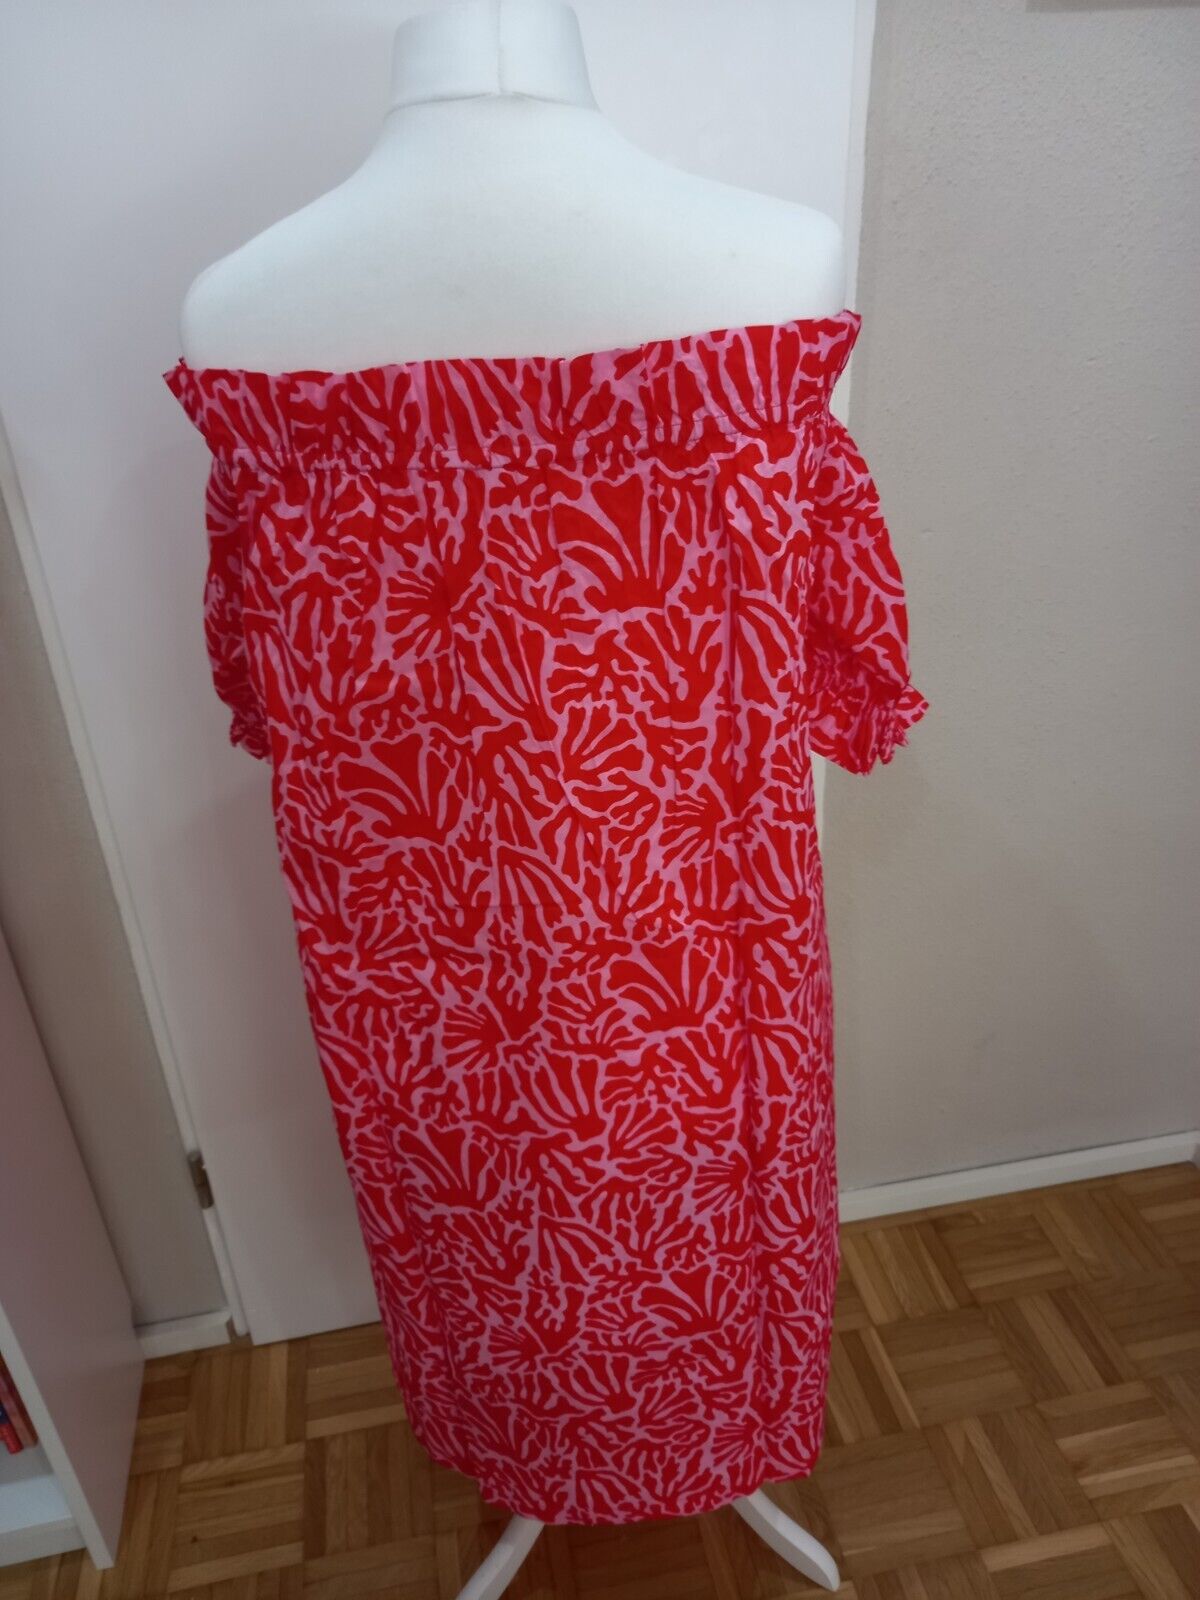 Carmenkleid rot rosa Gr. XXL 52 54 Sommerkleid Muster